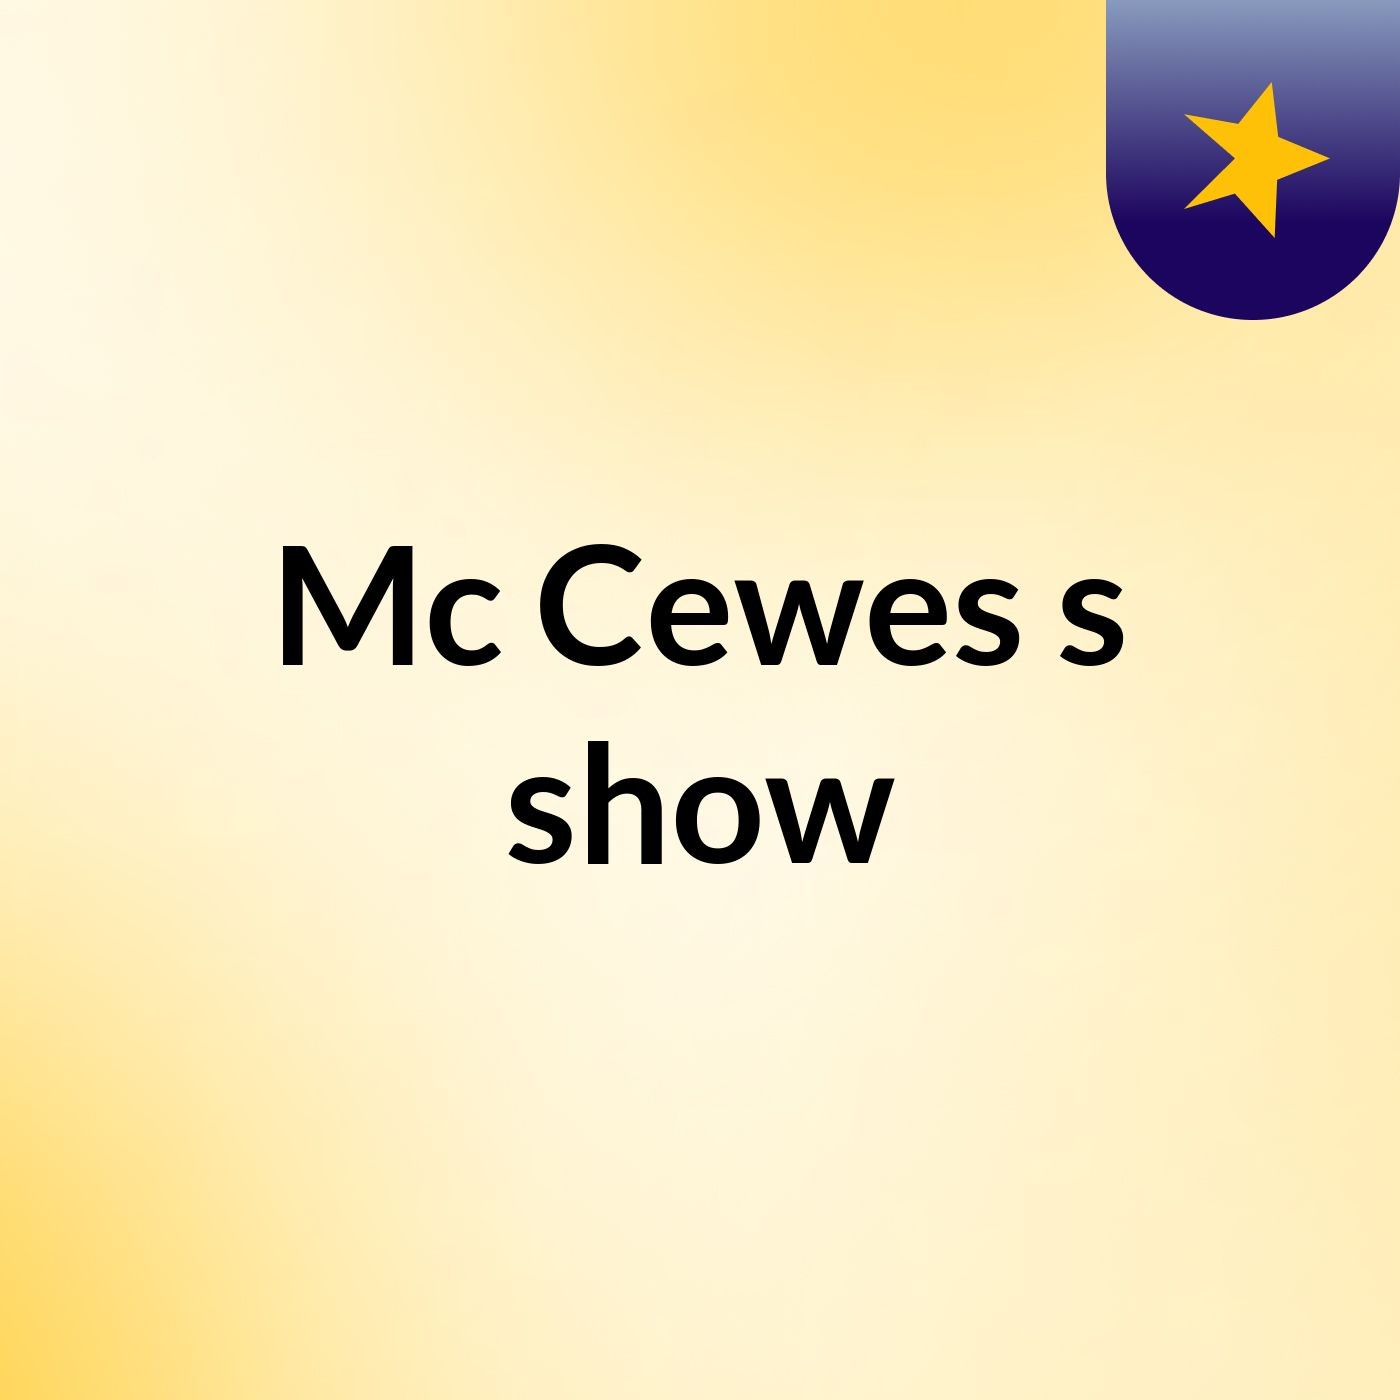 Mc Cewes's show